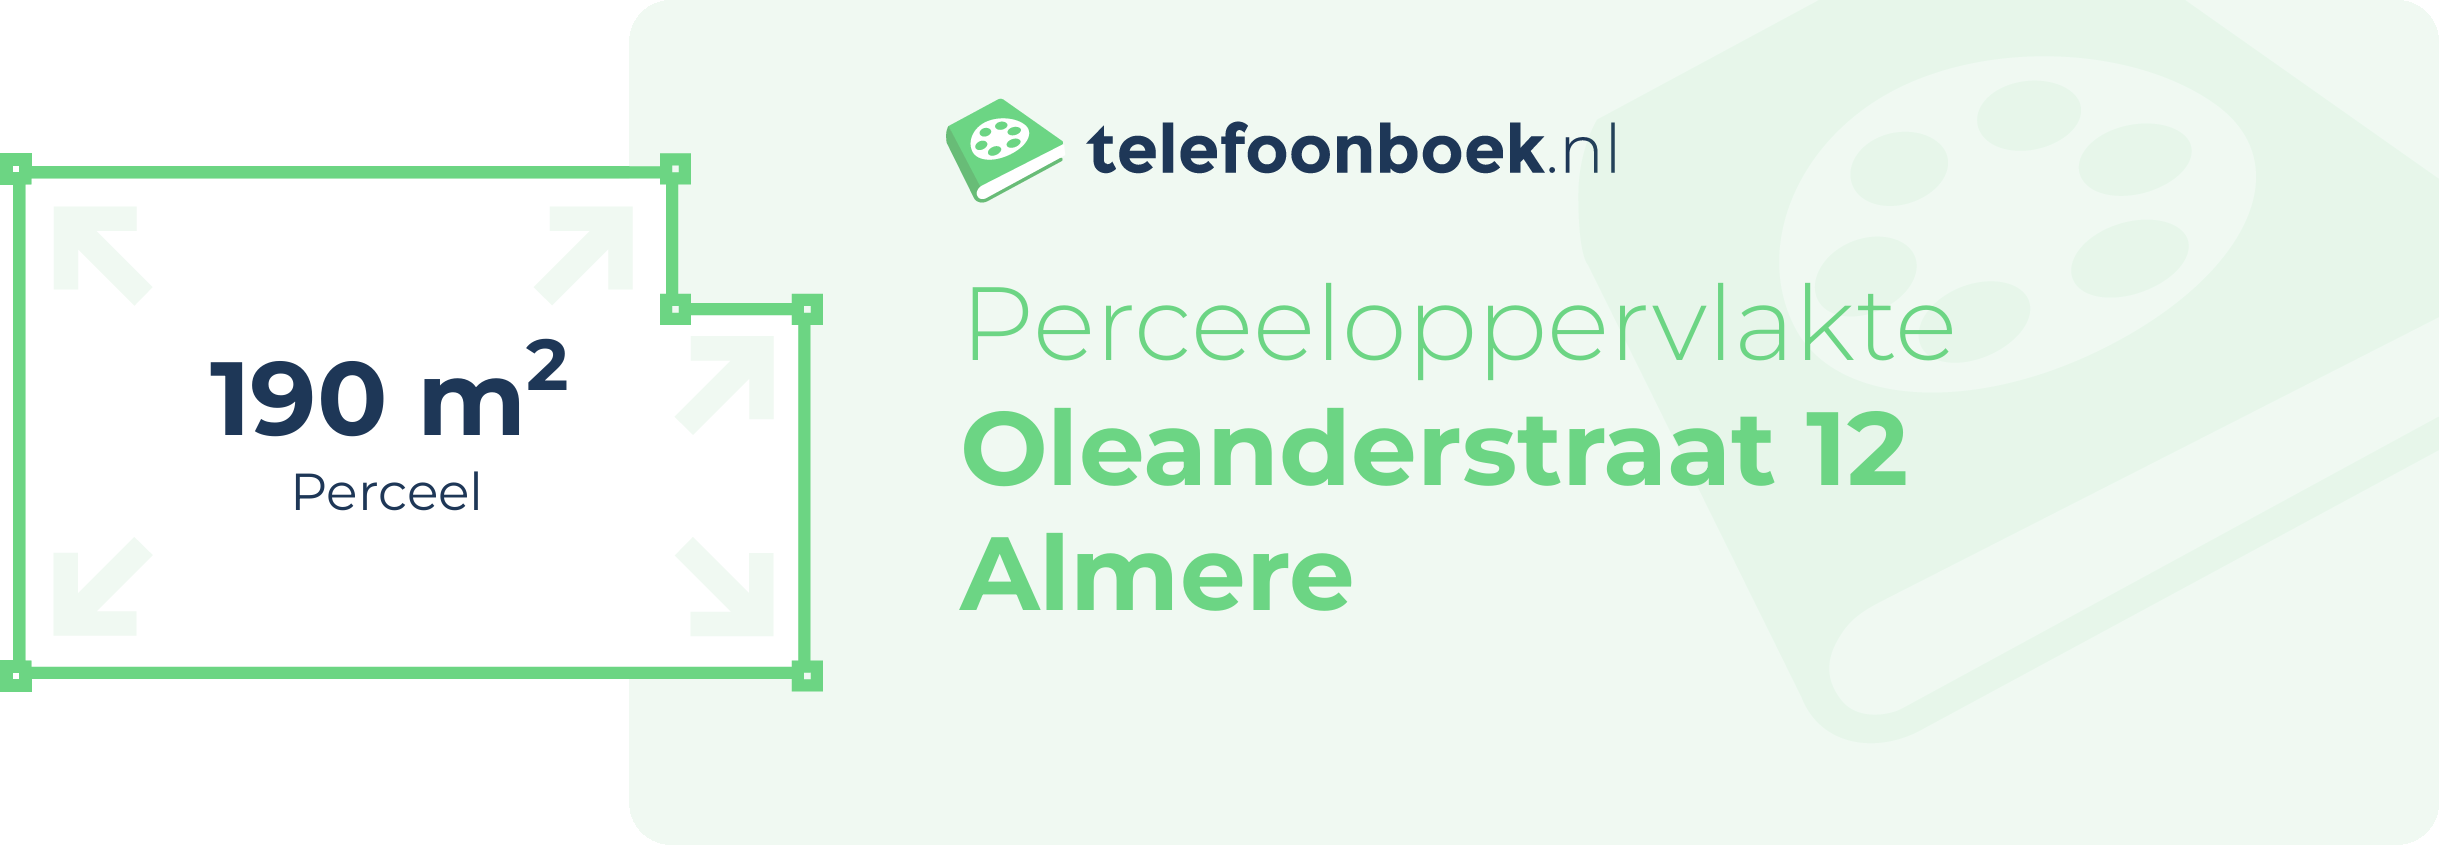 Perceeloppervlakte Oleanderstraat 12 Almere